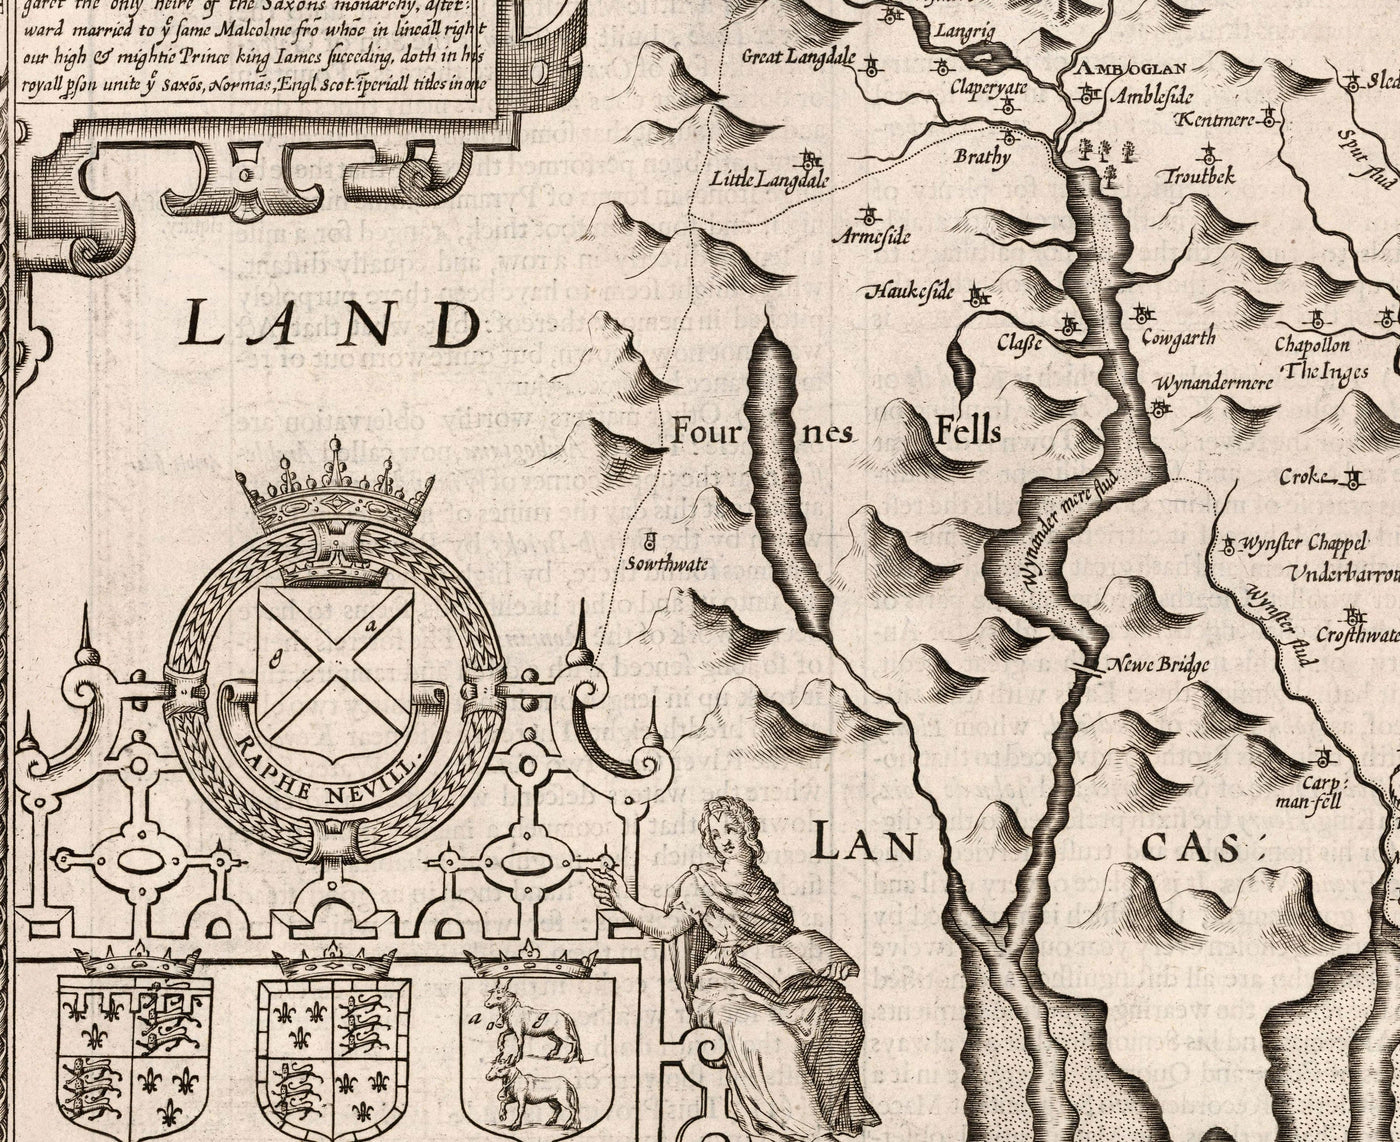 Alte monochrome Karte von Westmorland, 1611 von John Speed ​​- Lake District, Cumbria, Kendal, Windermere, Grasmere